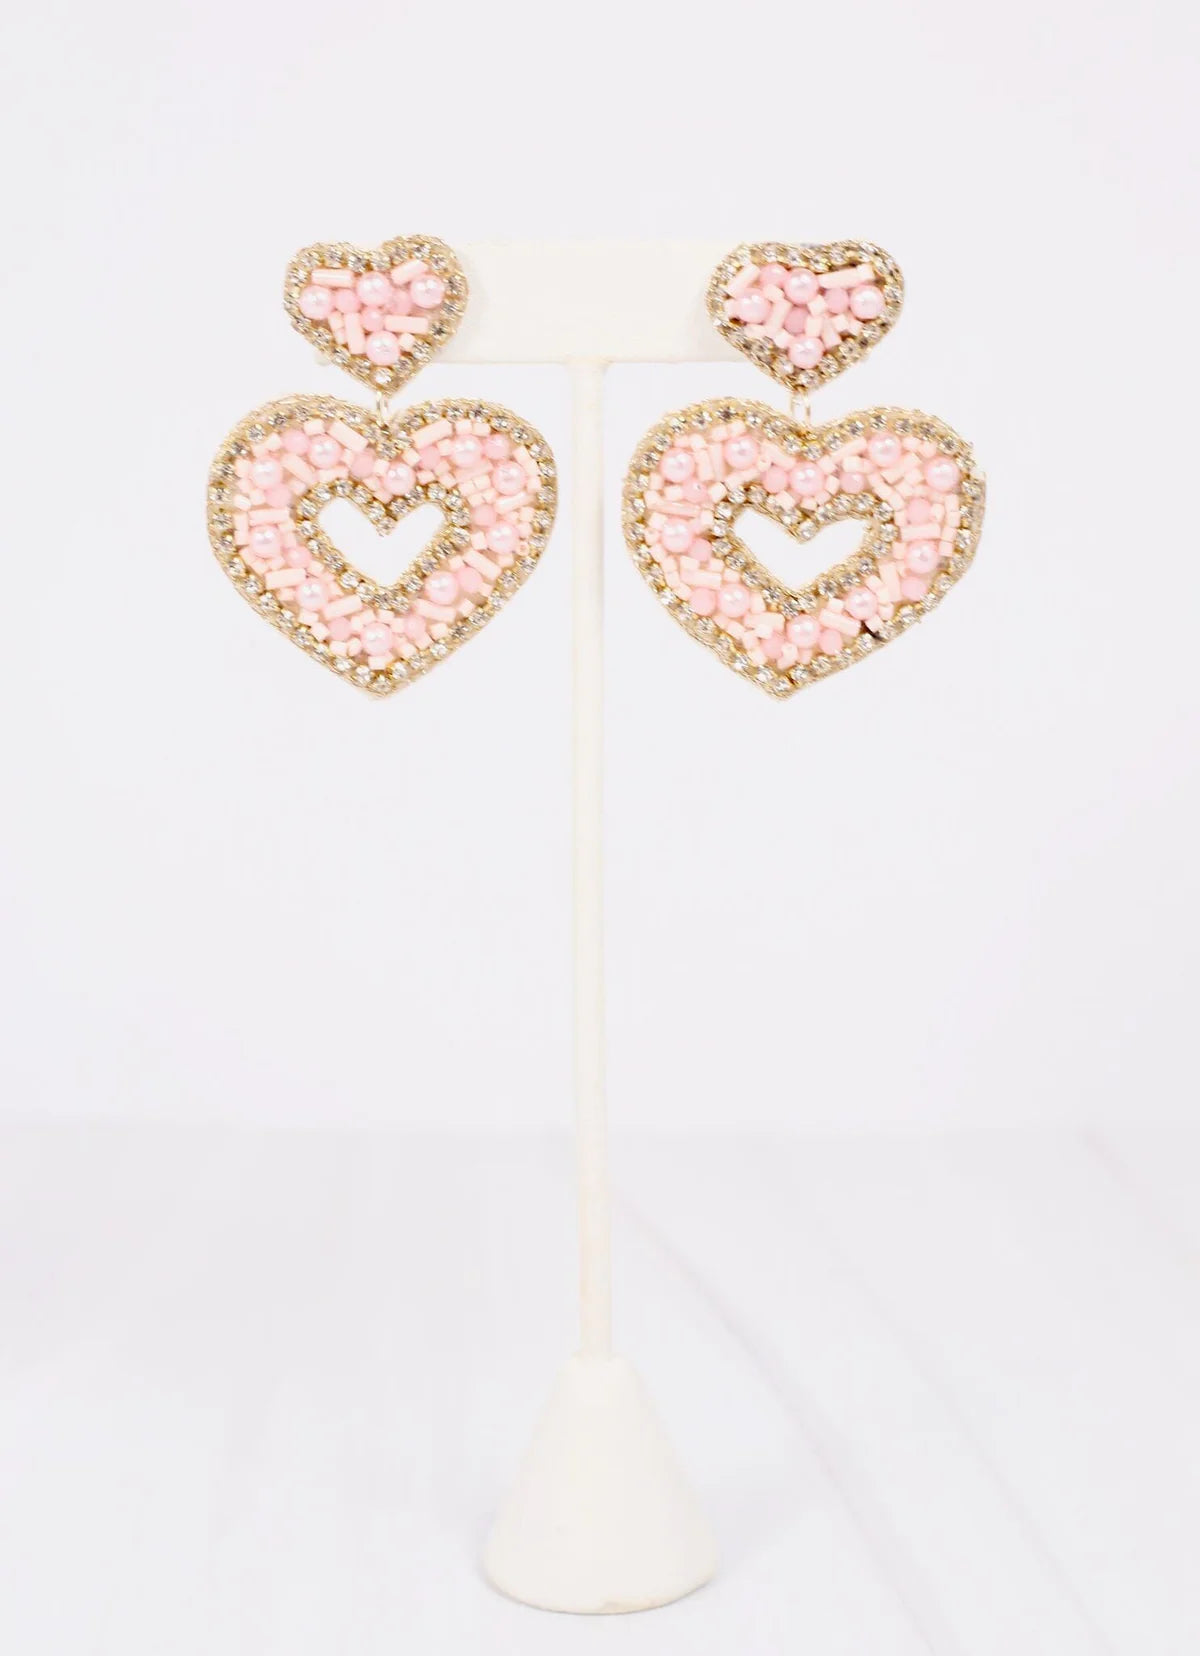 Sullivan Heart Embellished Earrings - Blush